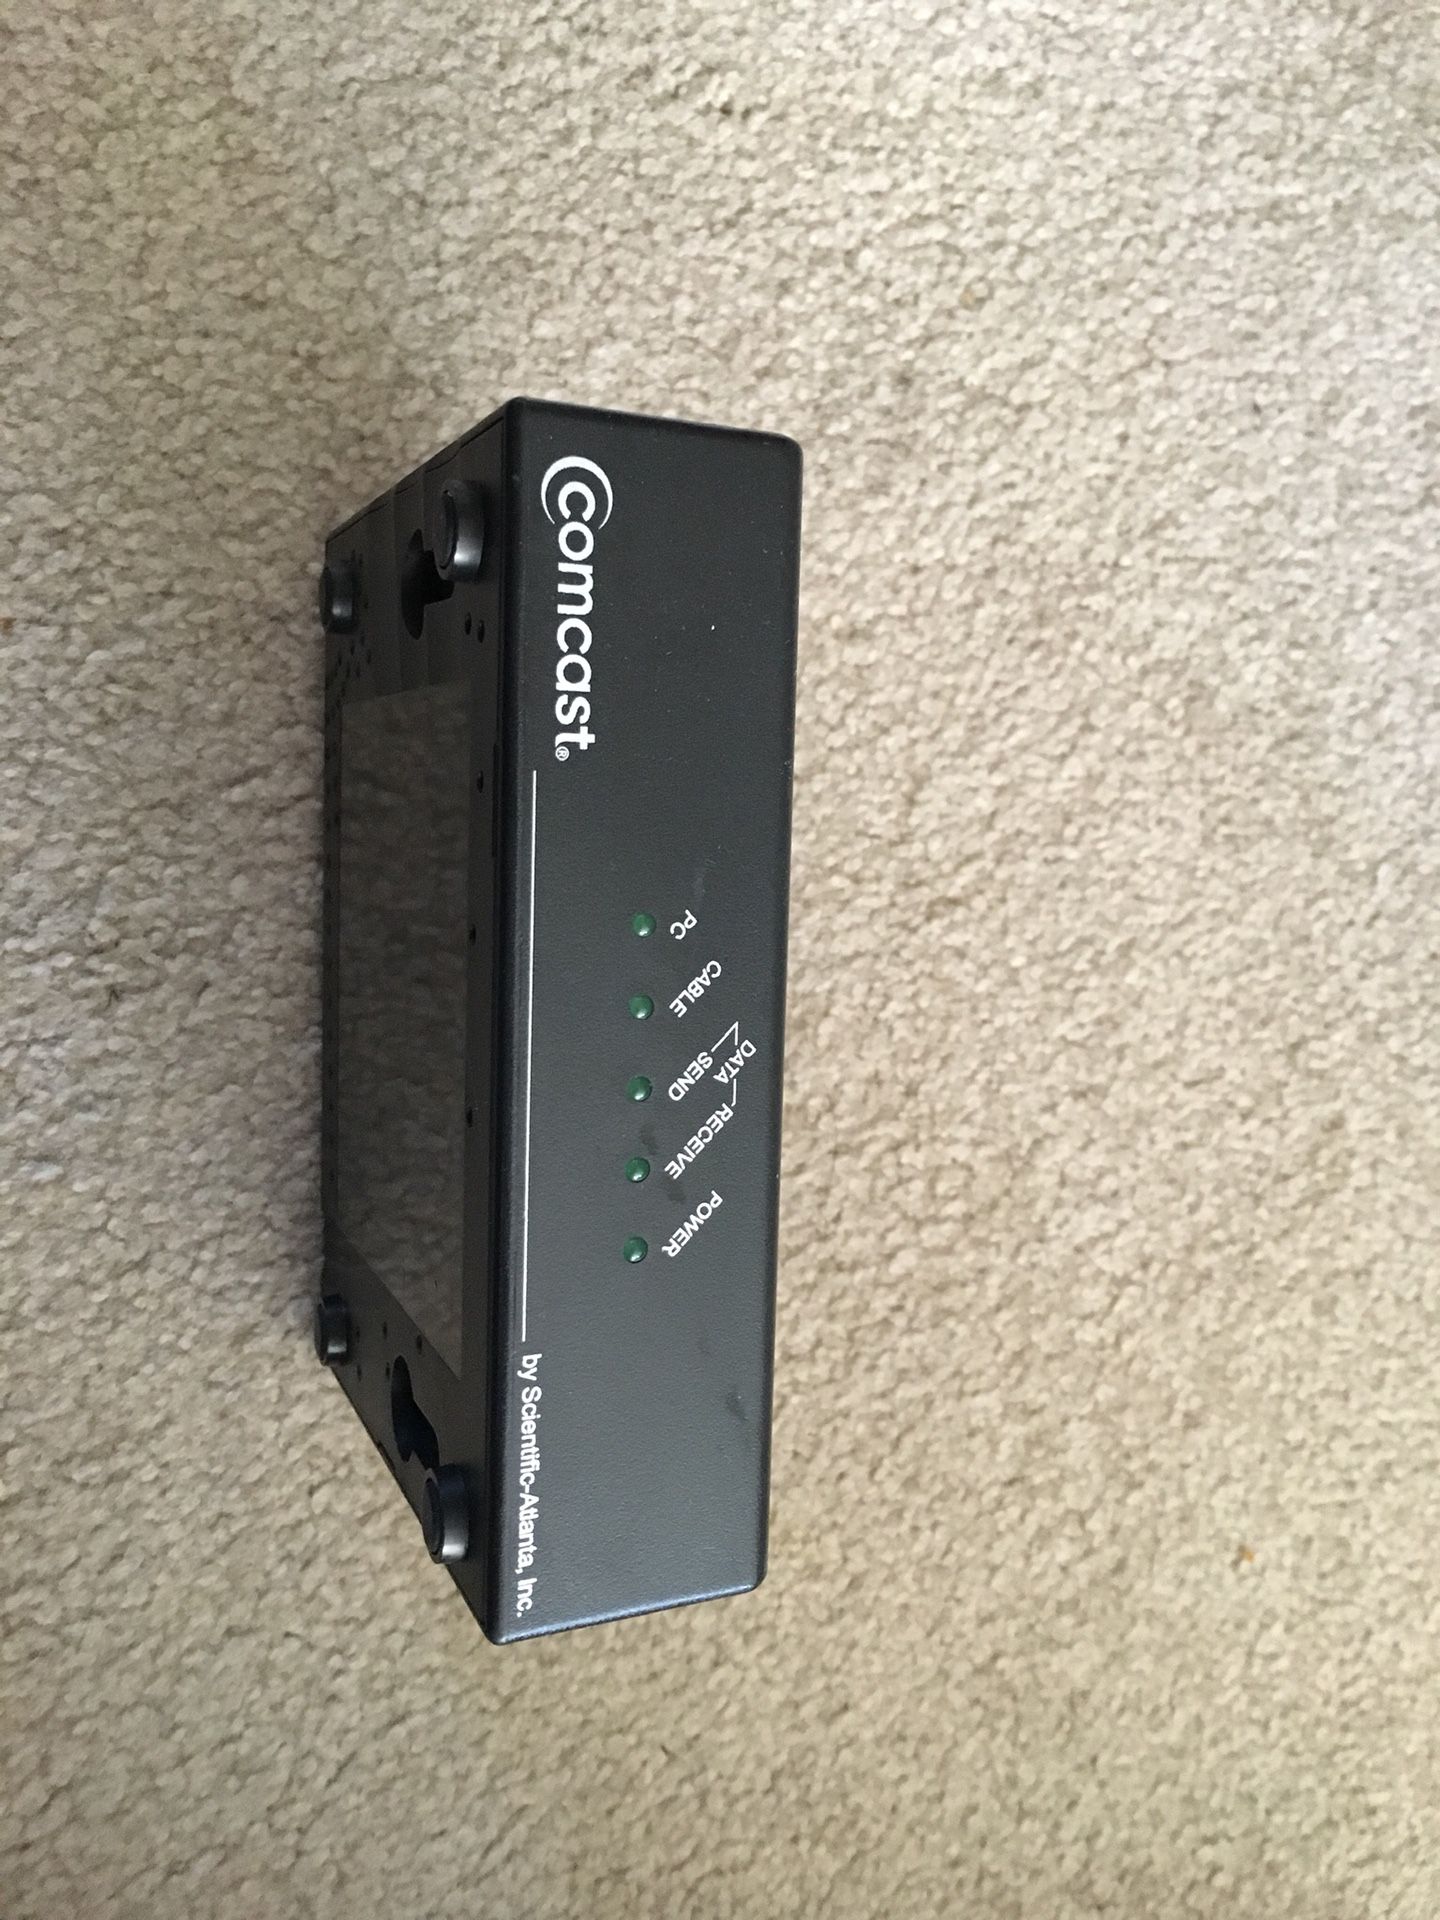 Comcast modem